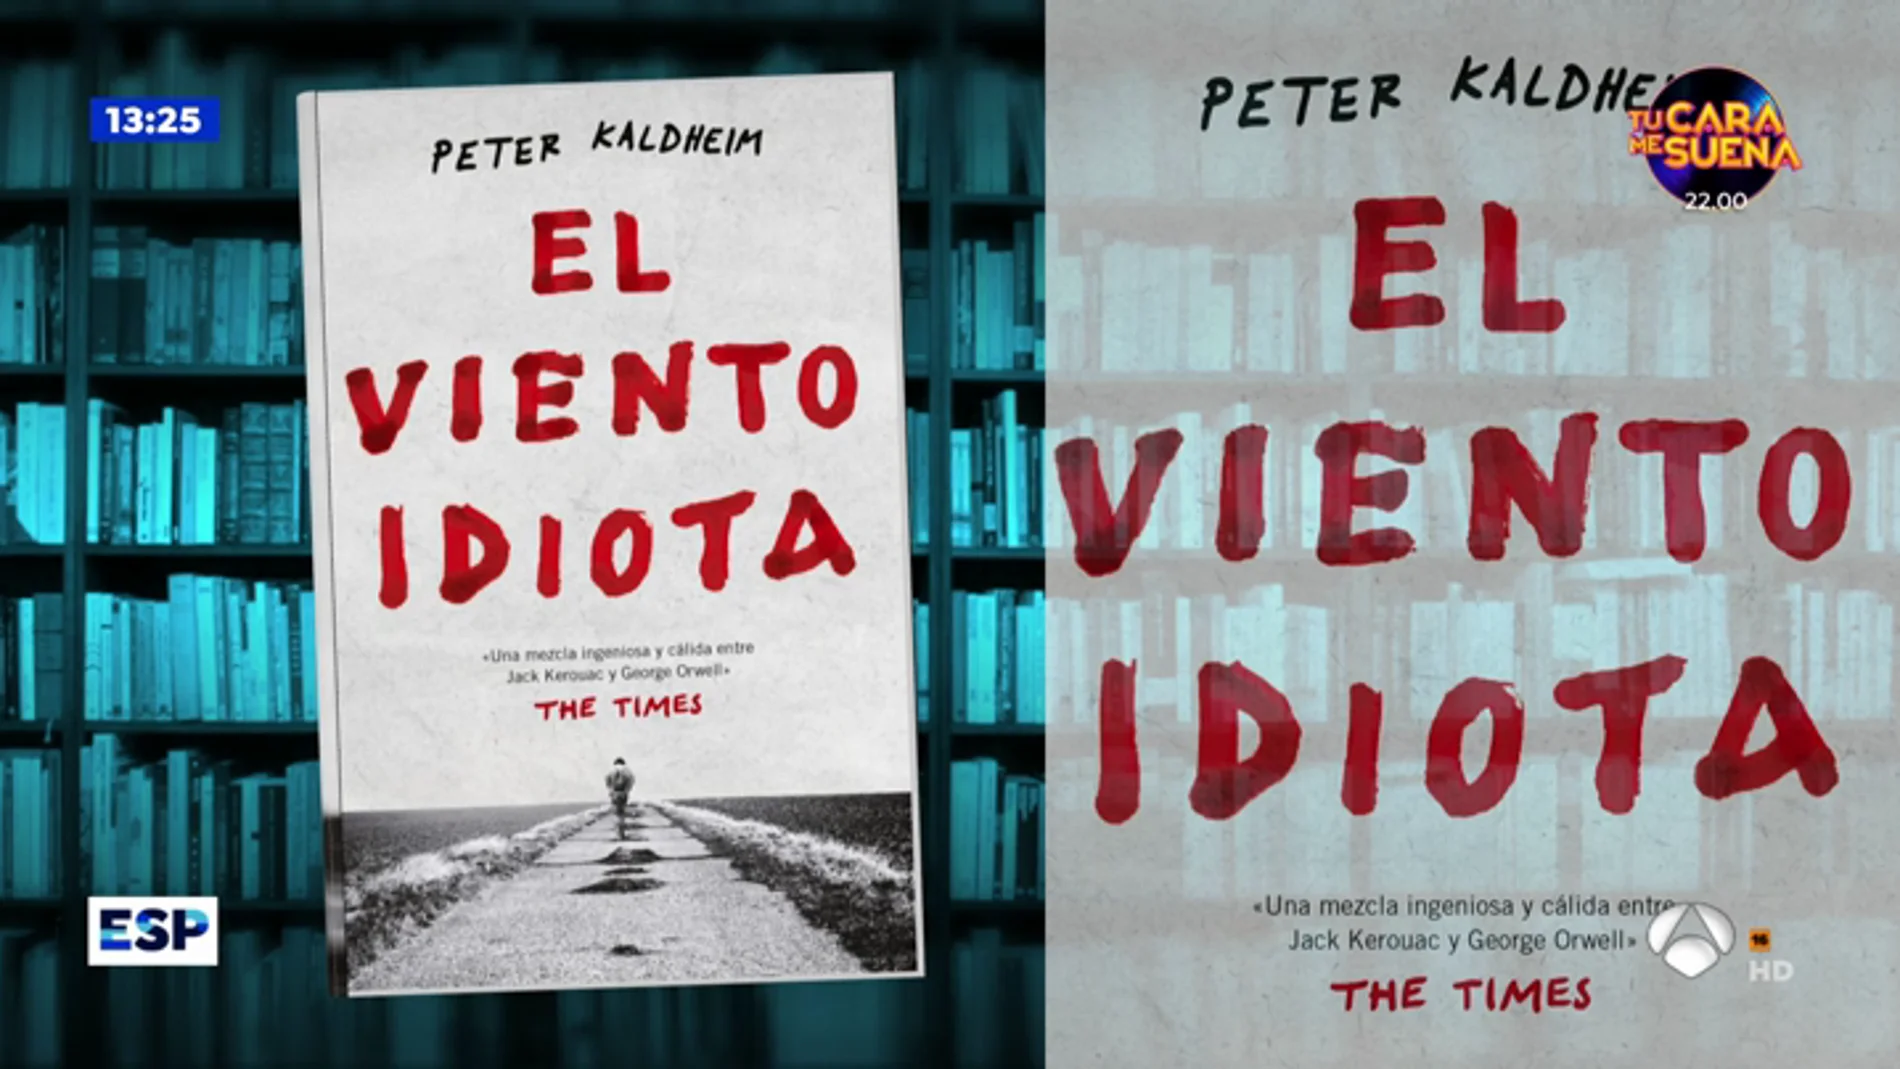 Los libros que recomienda Espejo Público: 'El viento idiota' y 'Memorias heterodoxas'